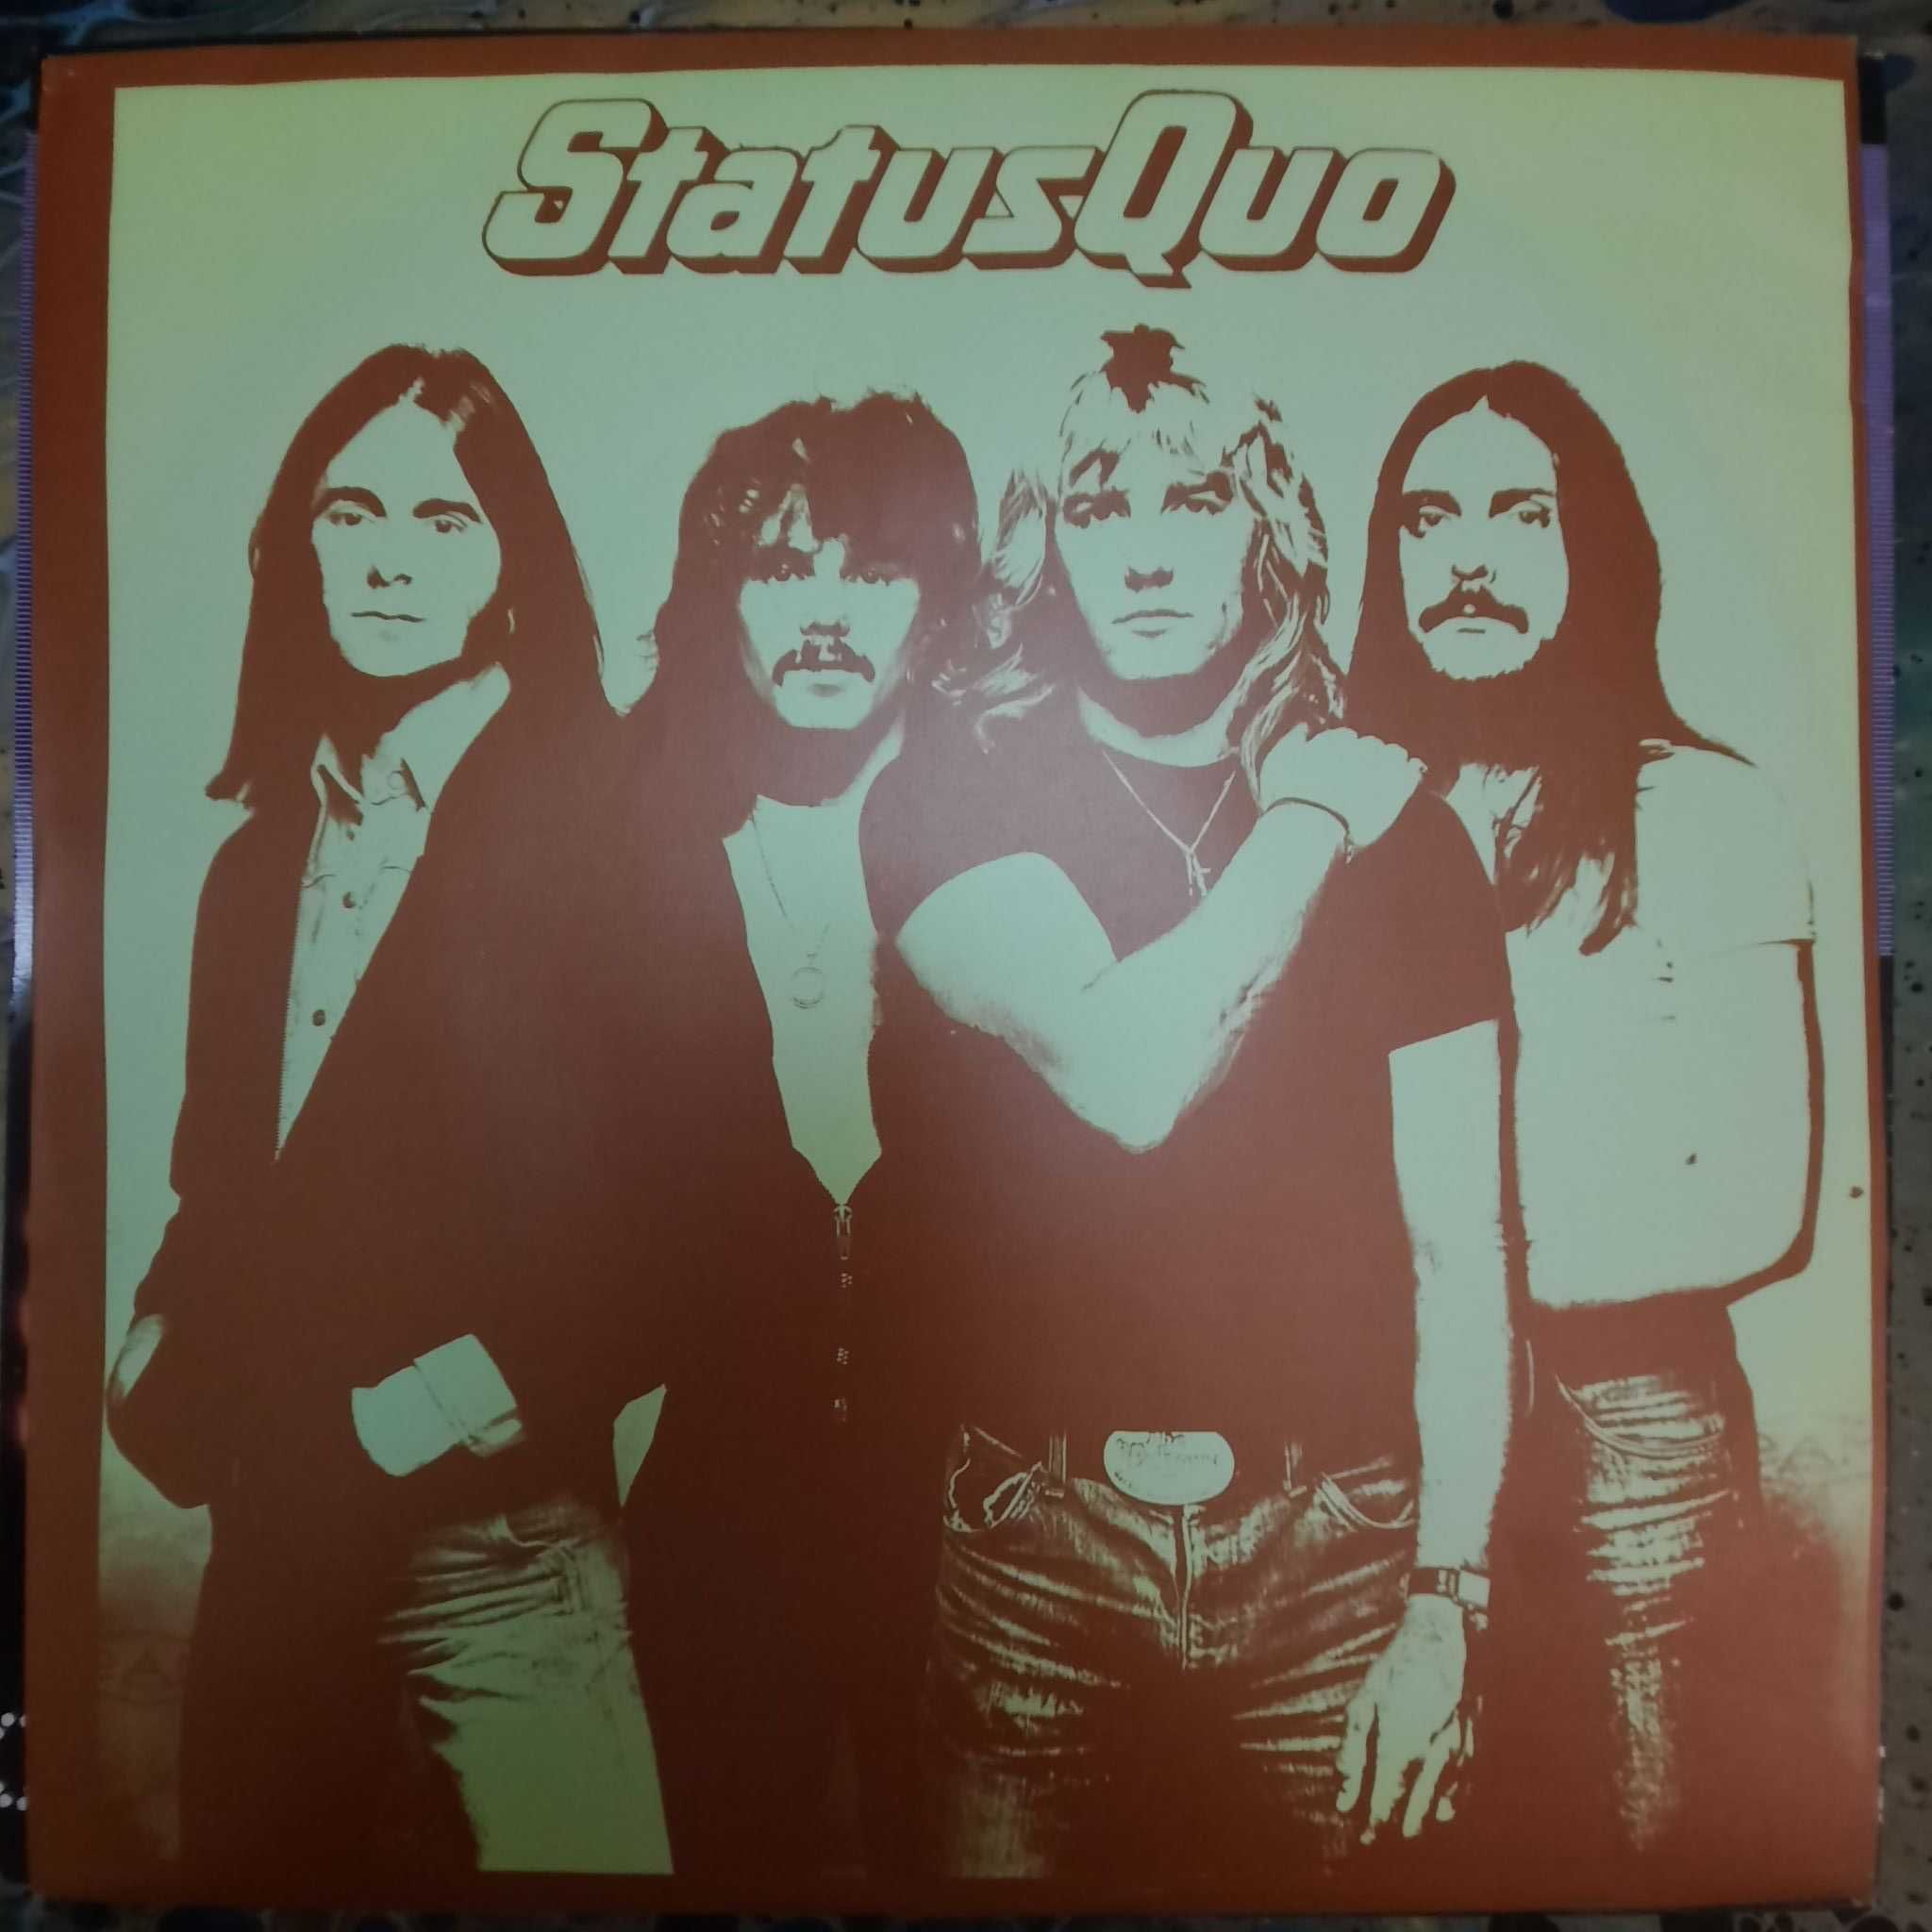 Пластинка виниловая Status Quo / Rockin' All Over The World // 1977